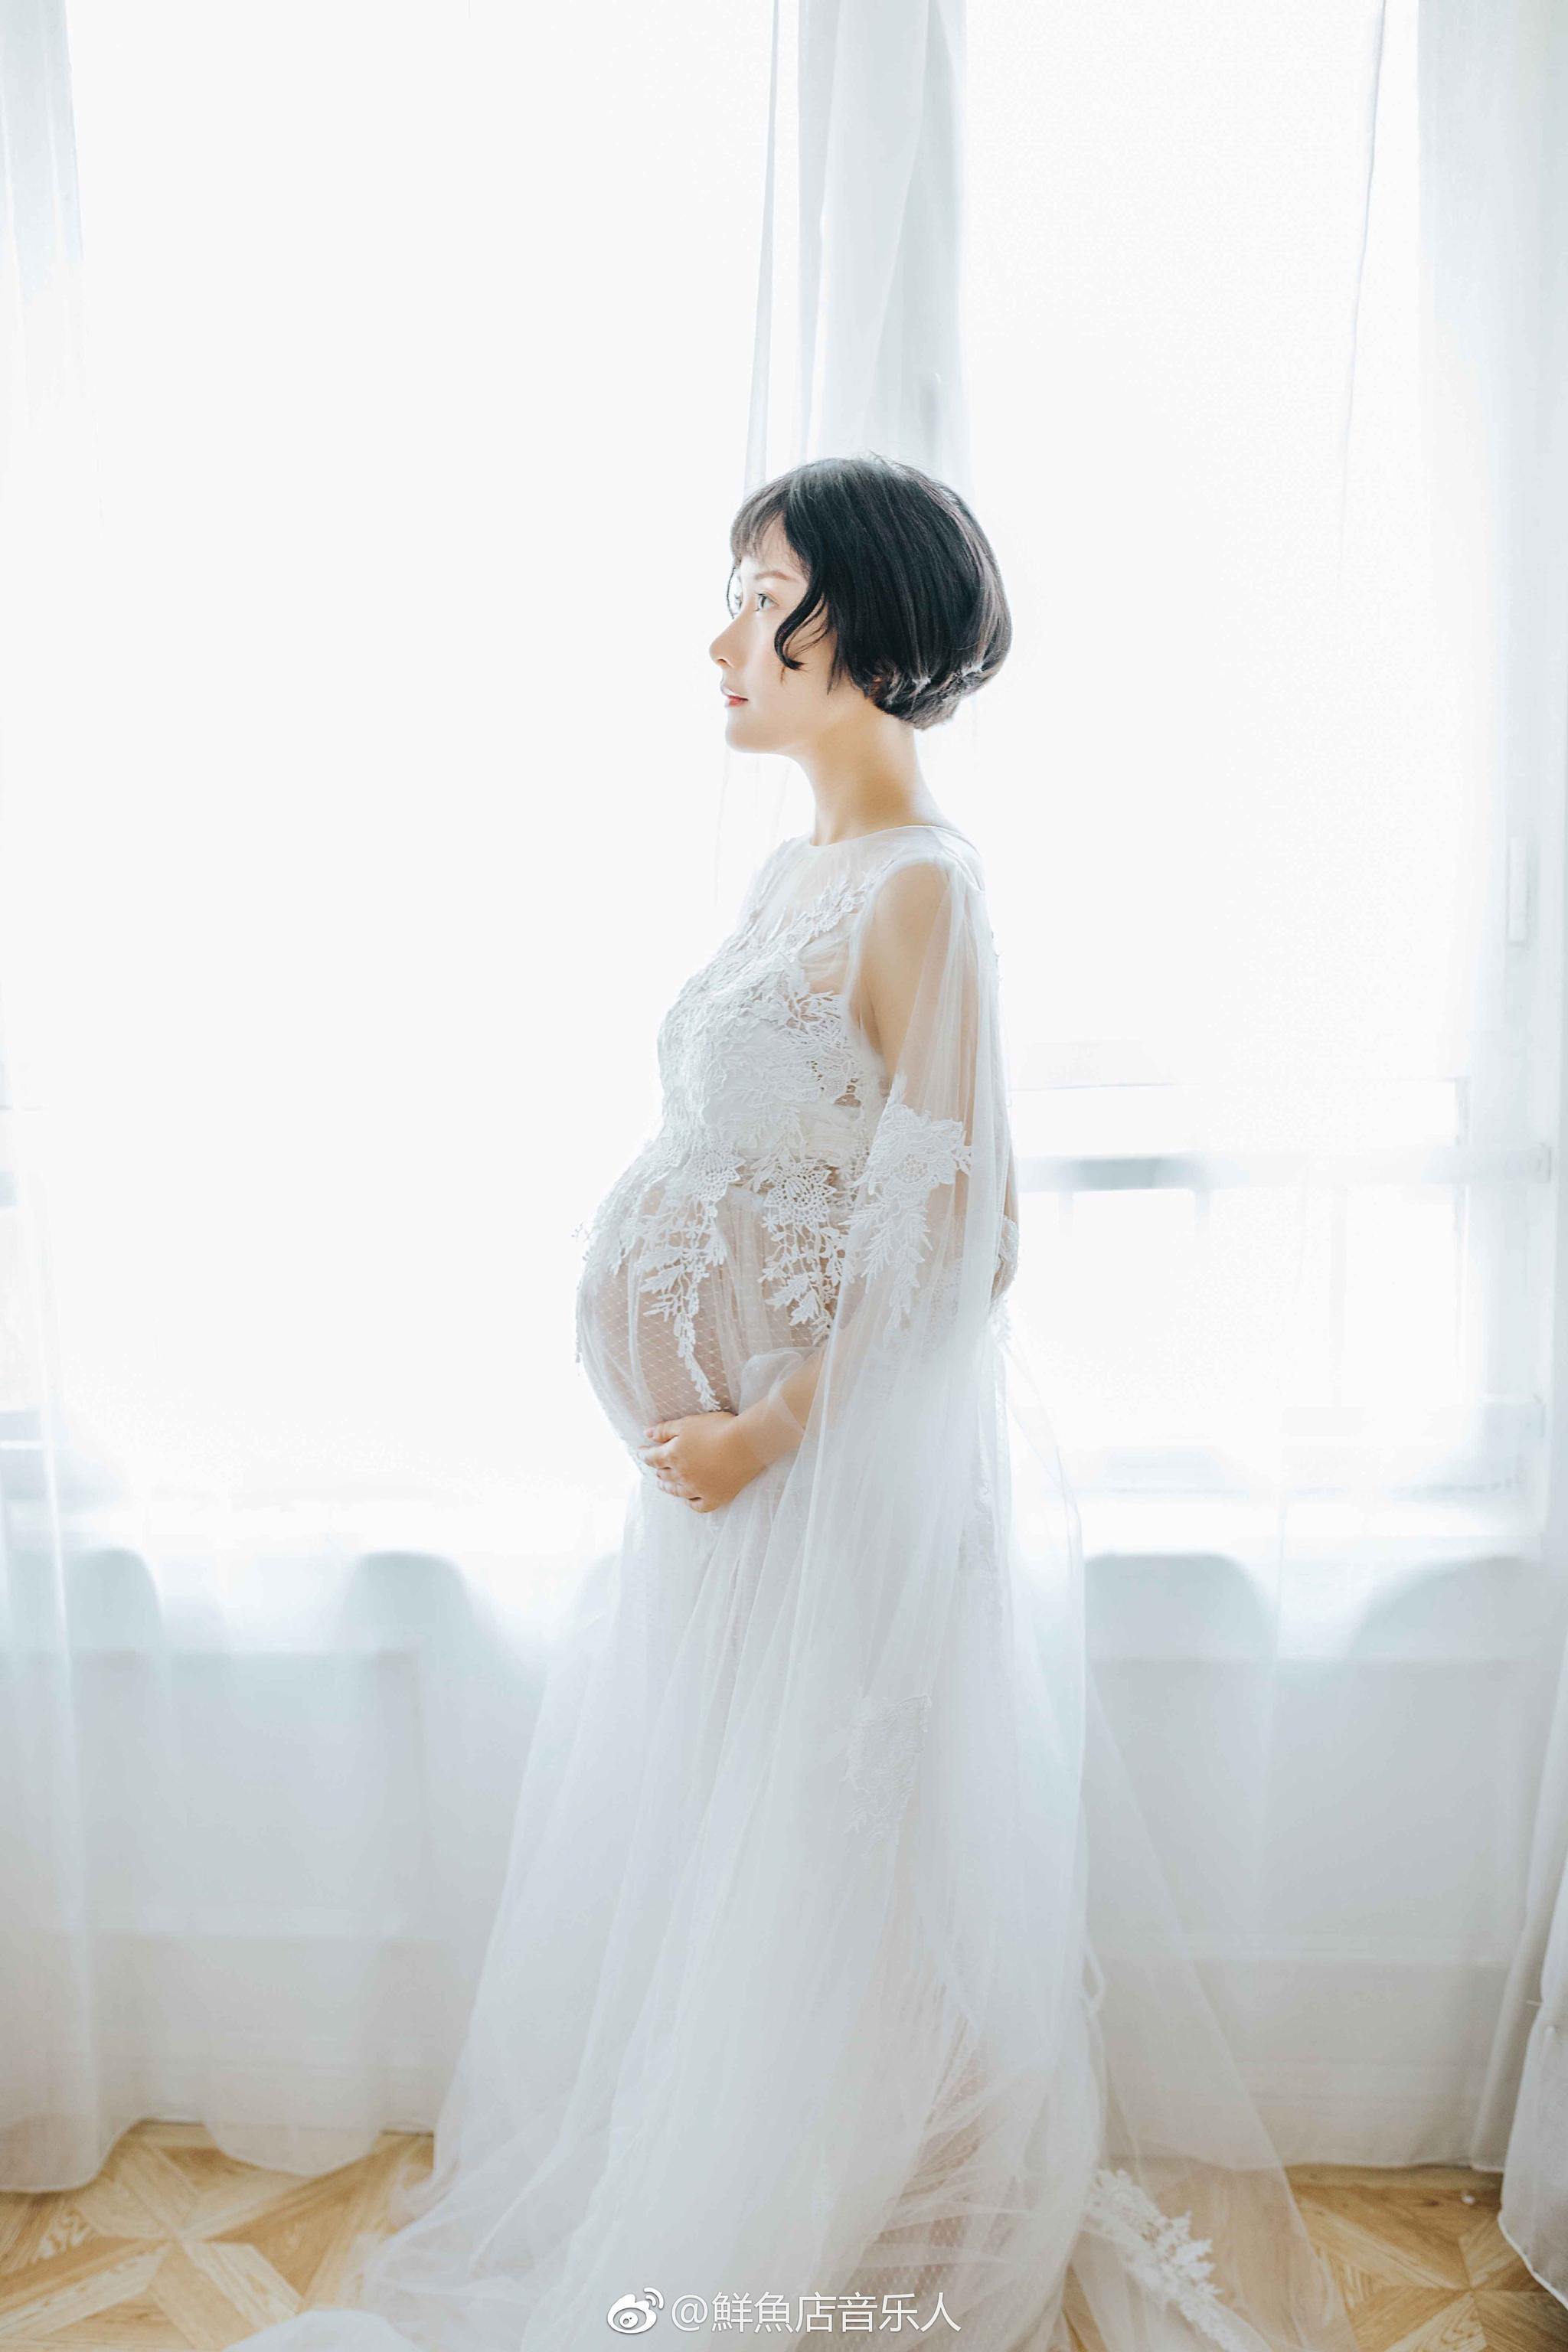 美女孕妇9个月_全球最大肚子的孕妇高清晰图片 - 随意云